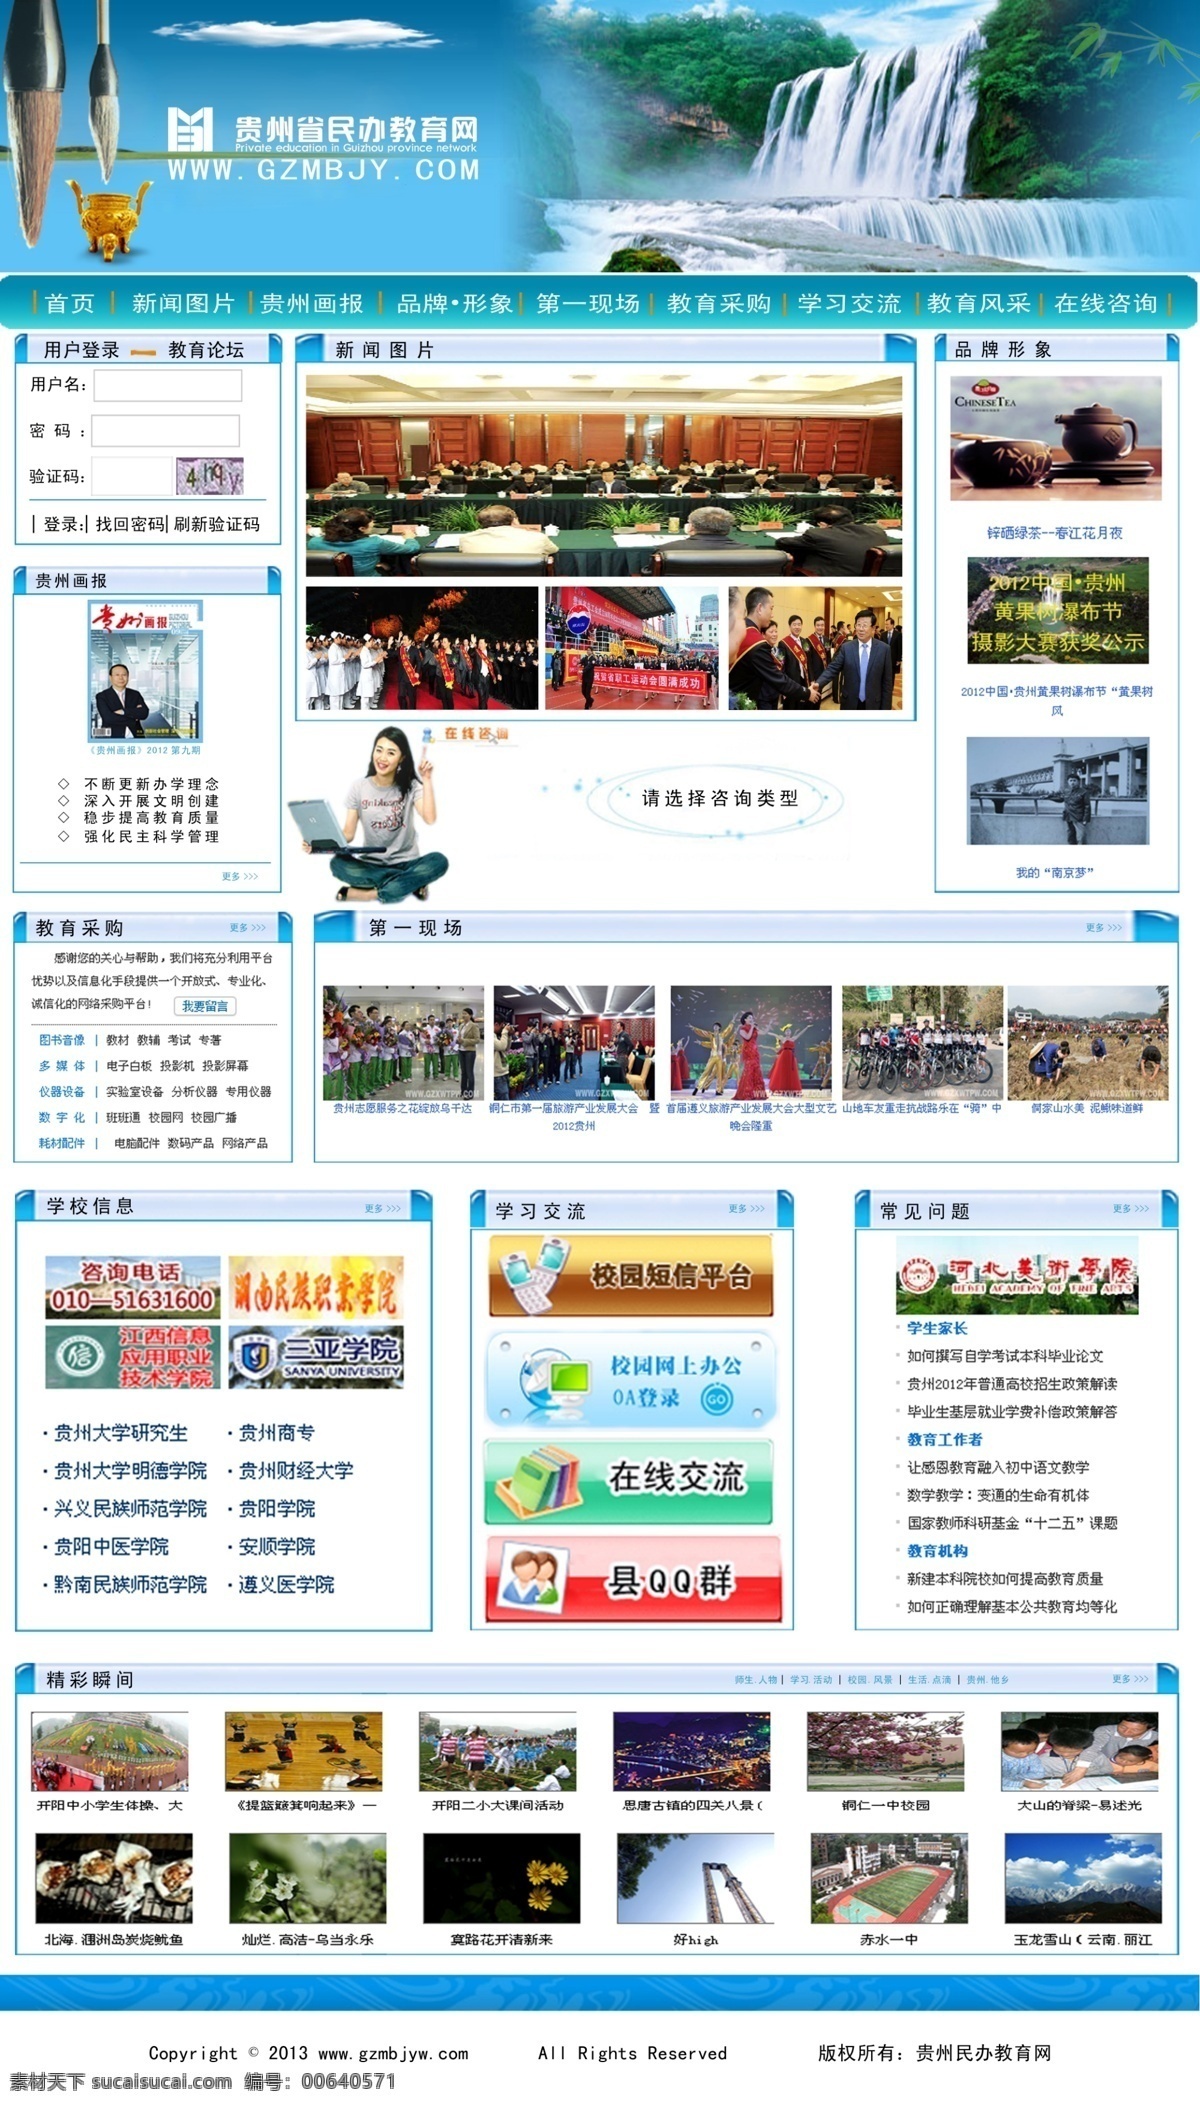 教育网 网页设计 黄果树 毛笔 网页模板 源文件 中文模版 网页素材